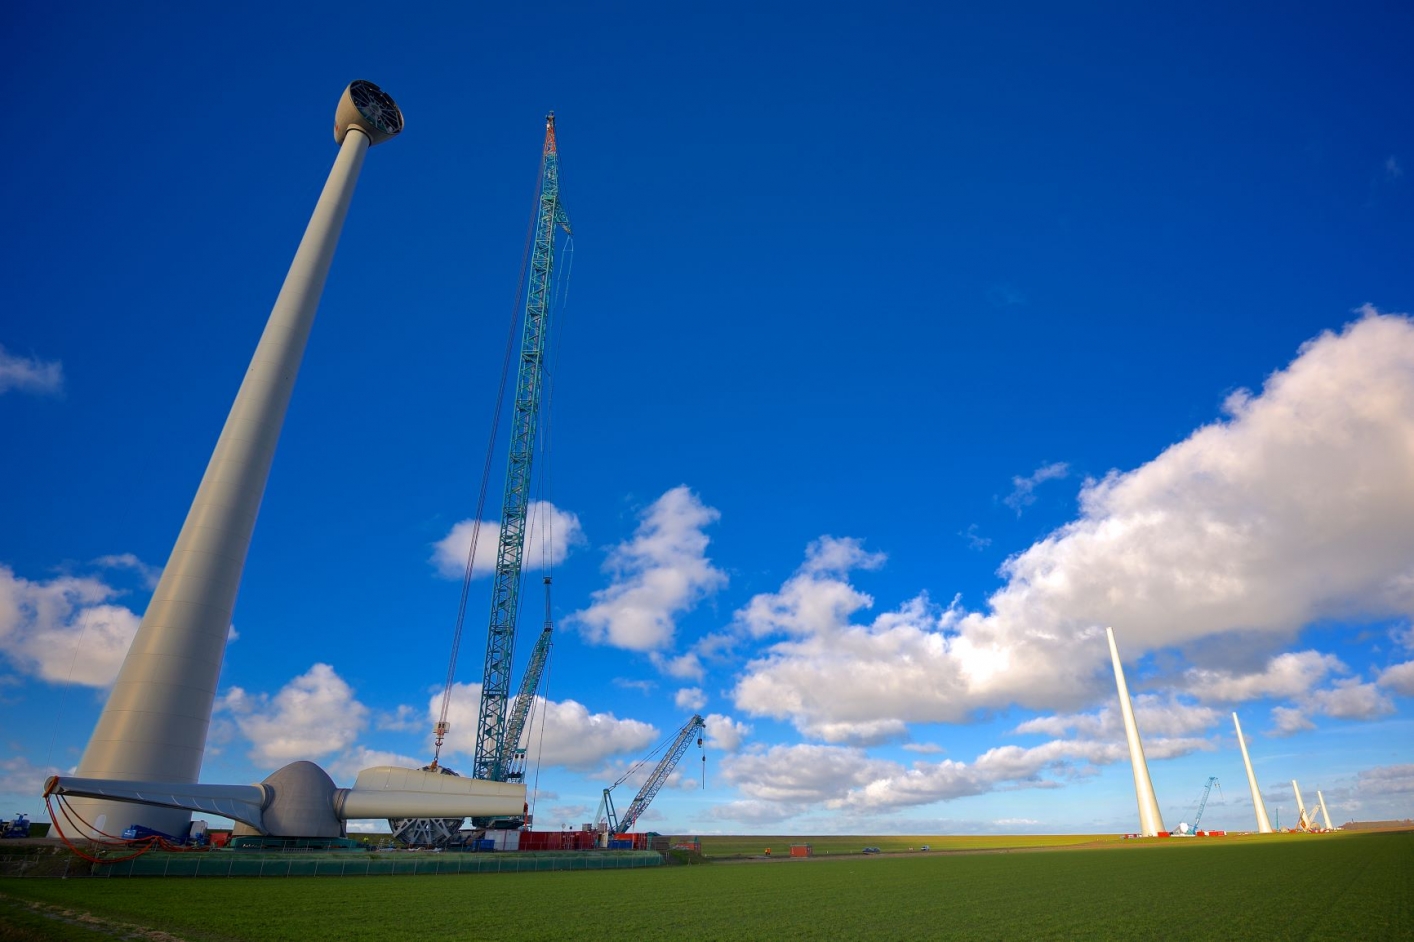 foto van de aanbouw van windmolens in een weids landschap